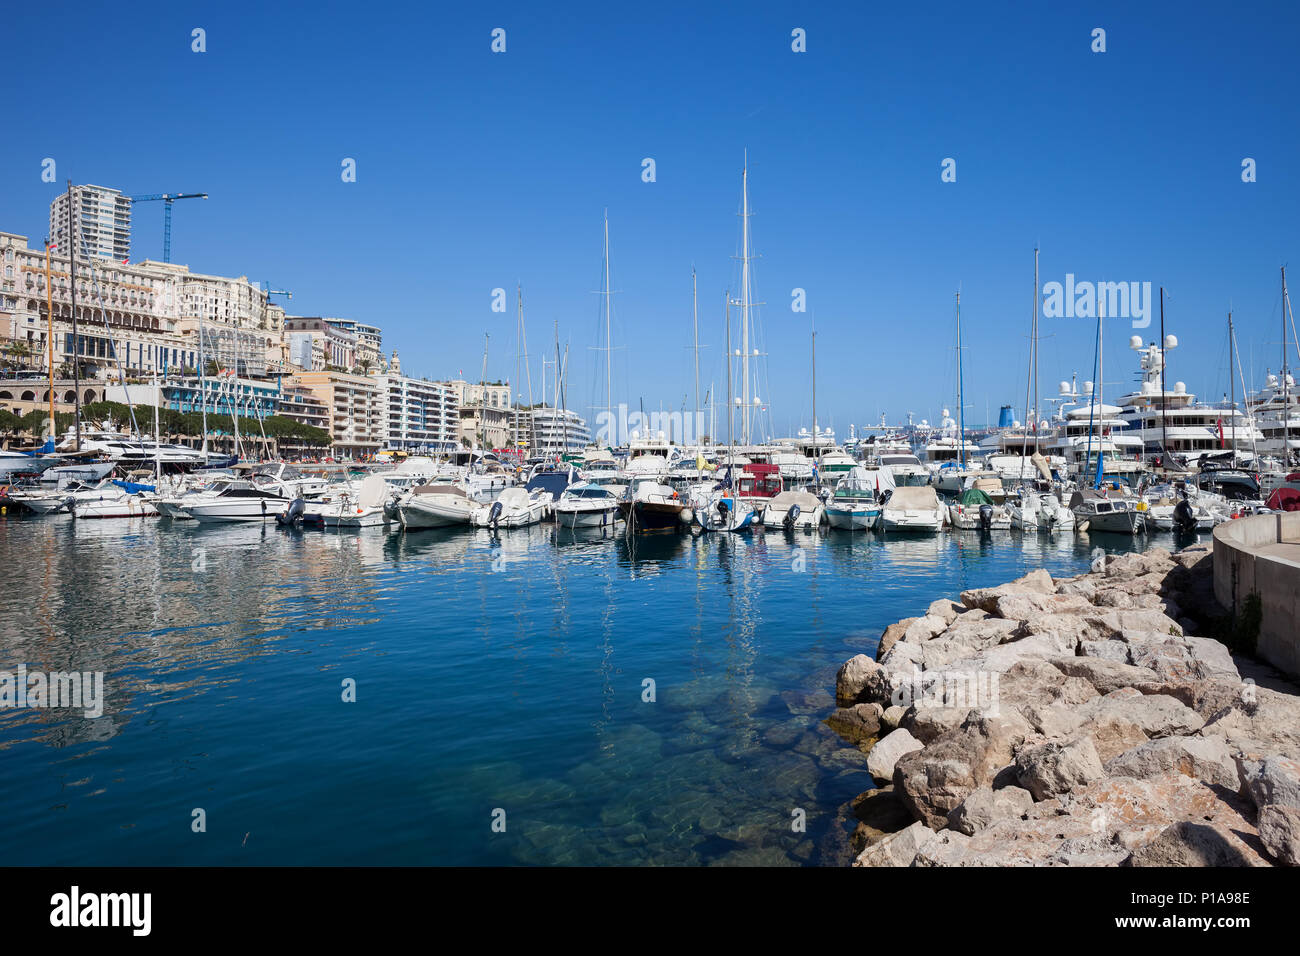 Monaco principality, boats, yachts and sailboats at Port Hercule on Mediterranean Sea Stock Photo